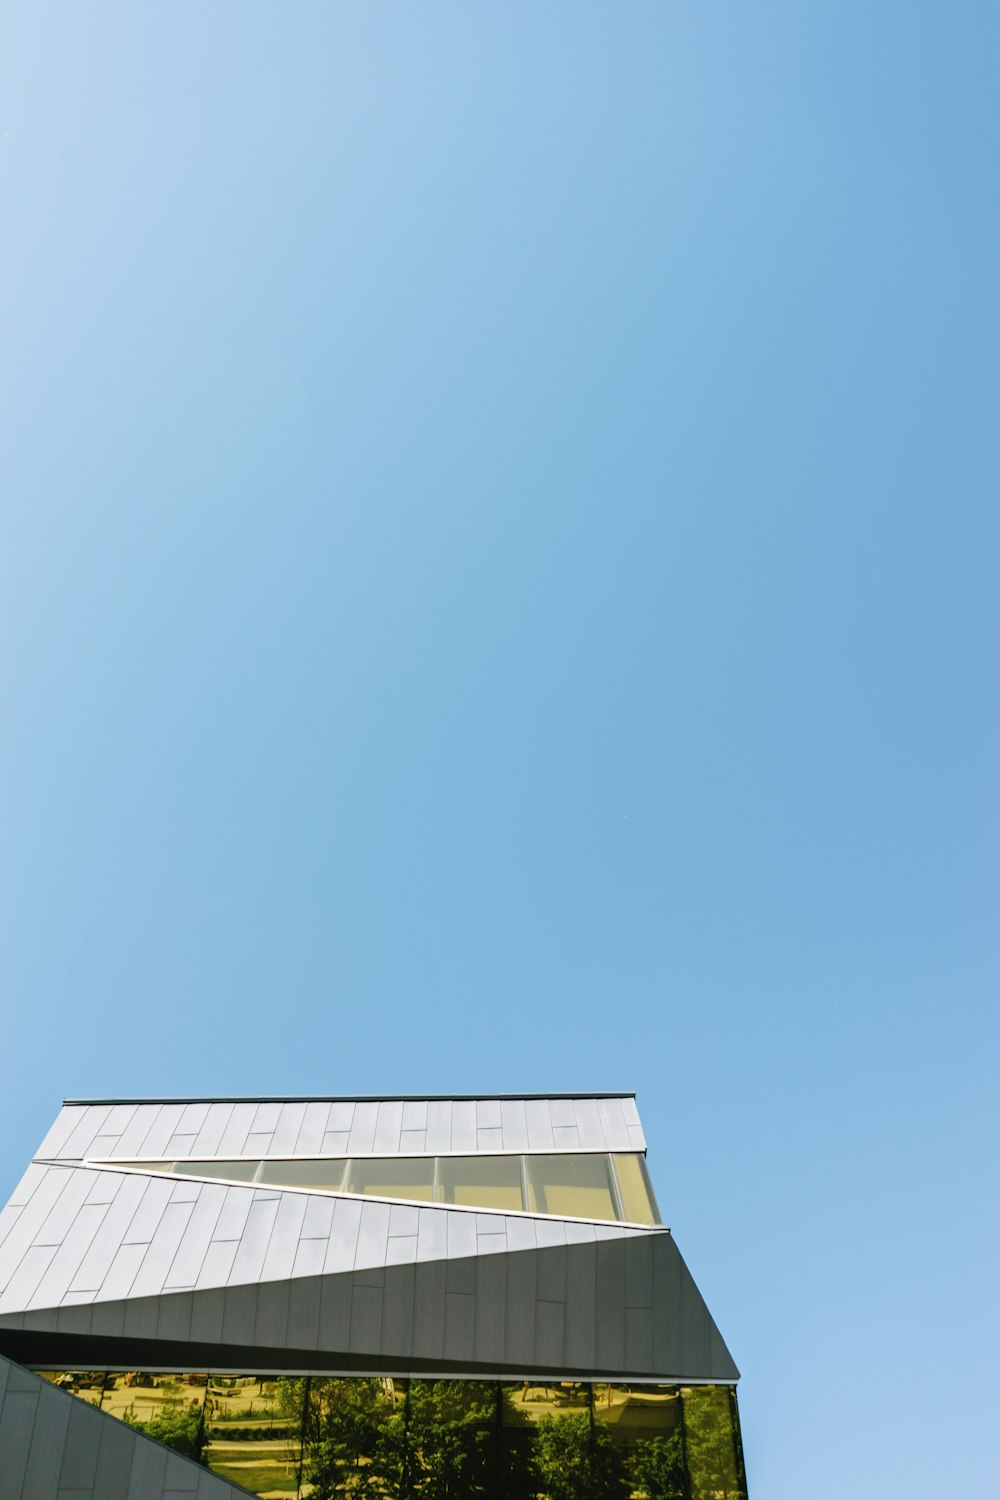 Photographie en contre-plongée d’un bâtiment en béton blanc sous un ciel bleu clair